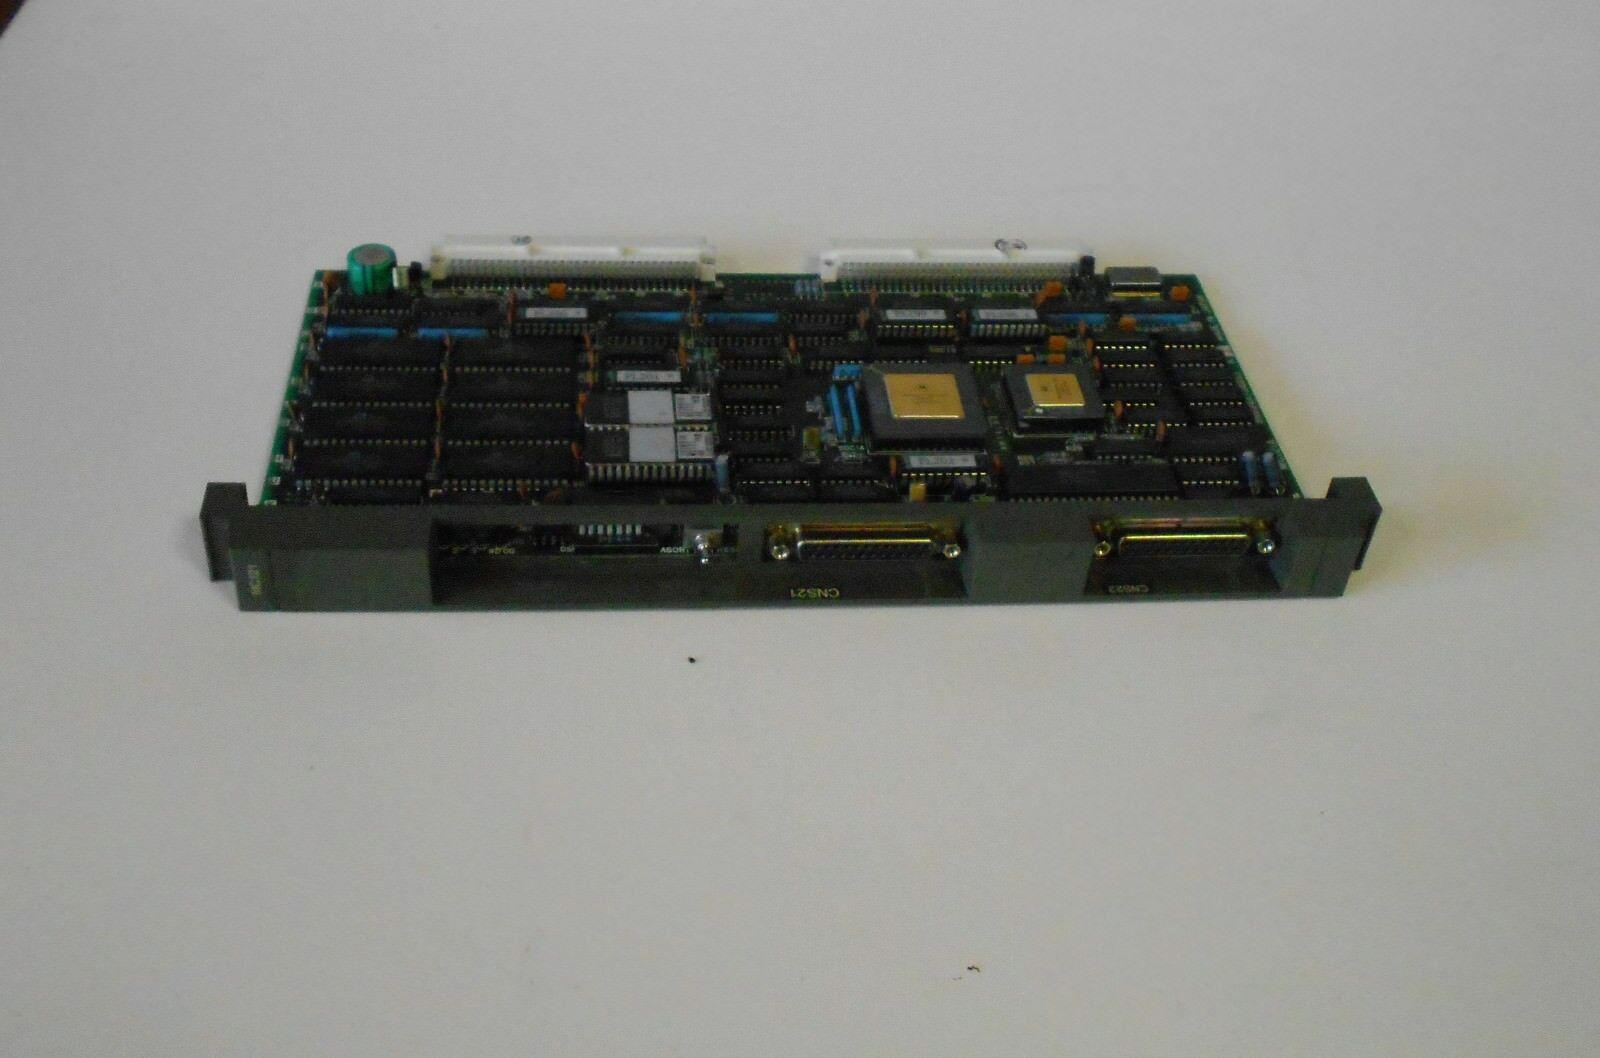 Mitsubishi Pc Board, MC121A, BN624A724G53, Revision J, 